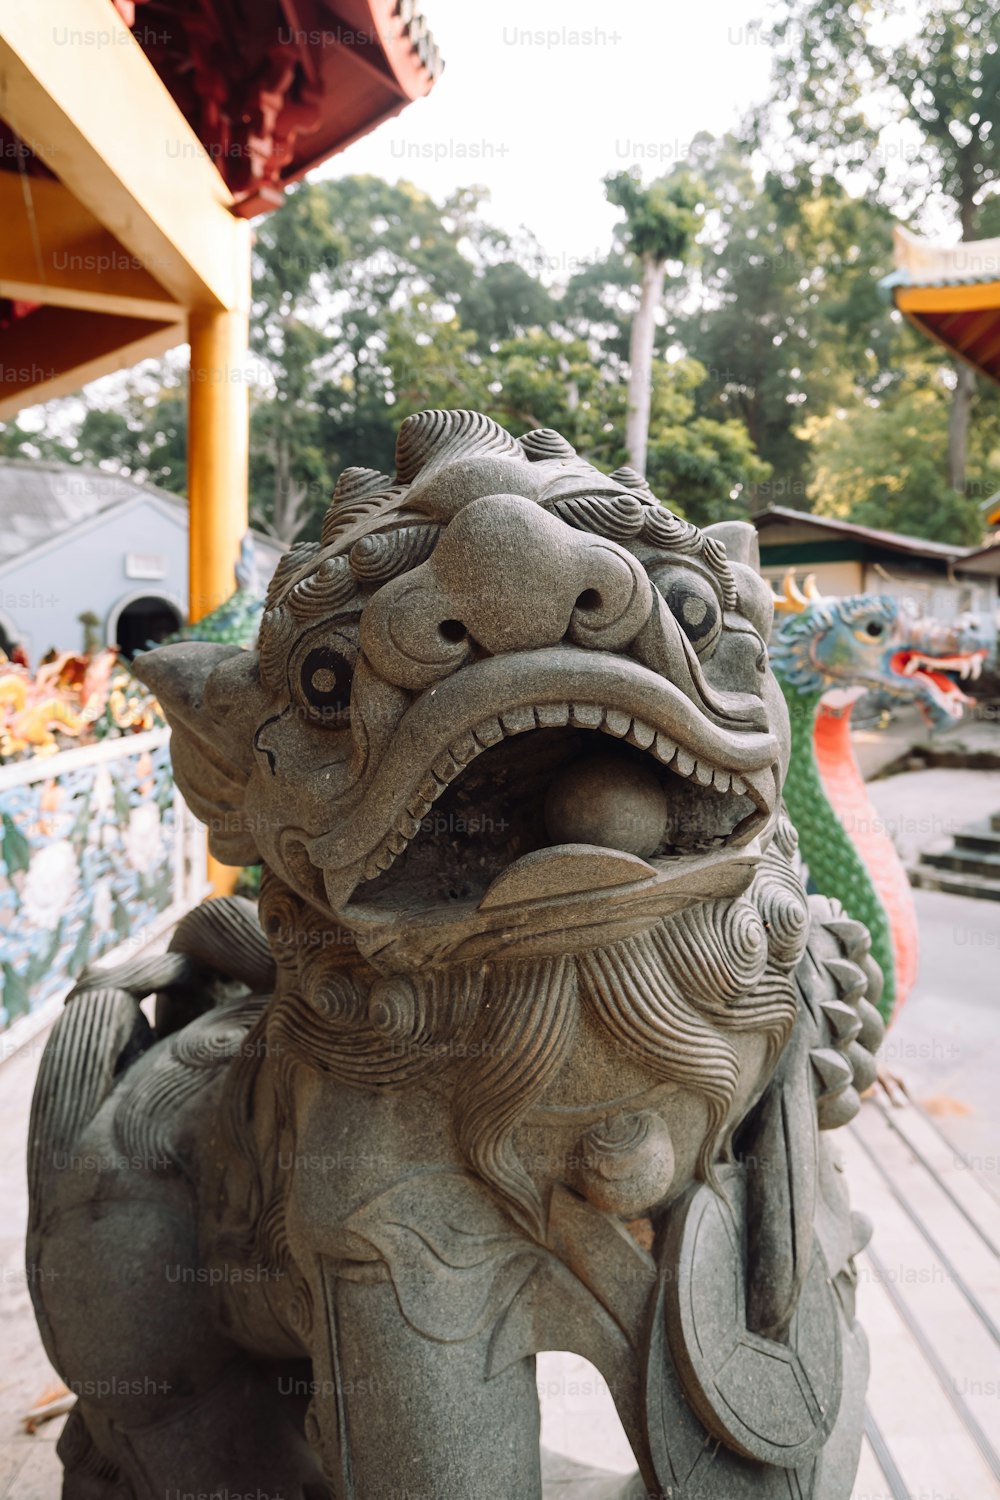 Una estatua de un dragón en un banco de madera